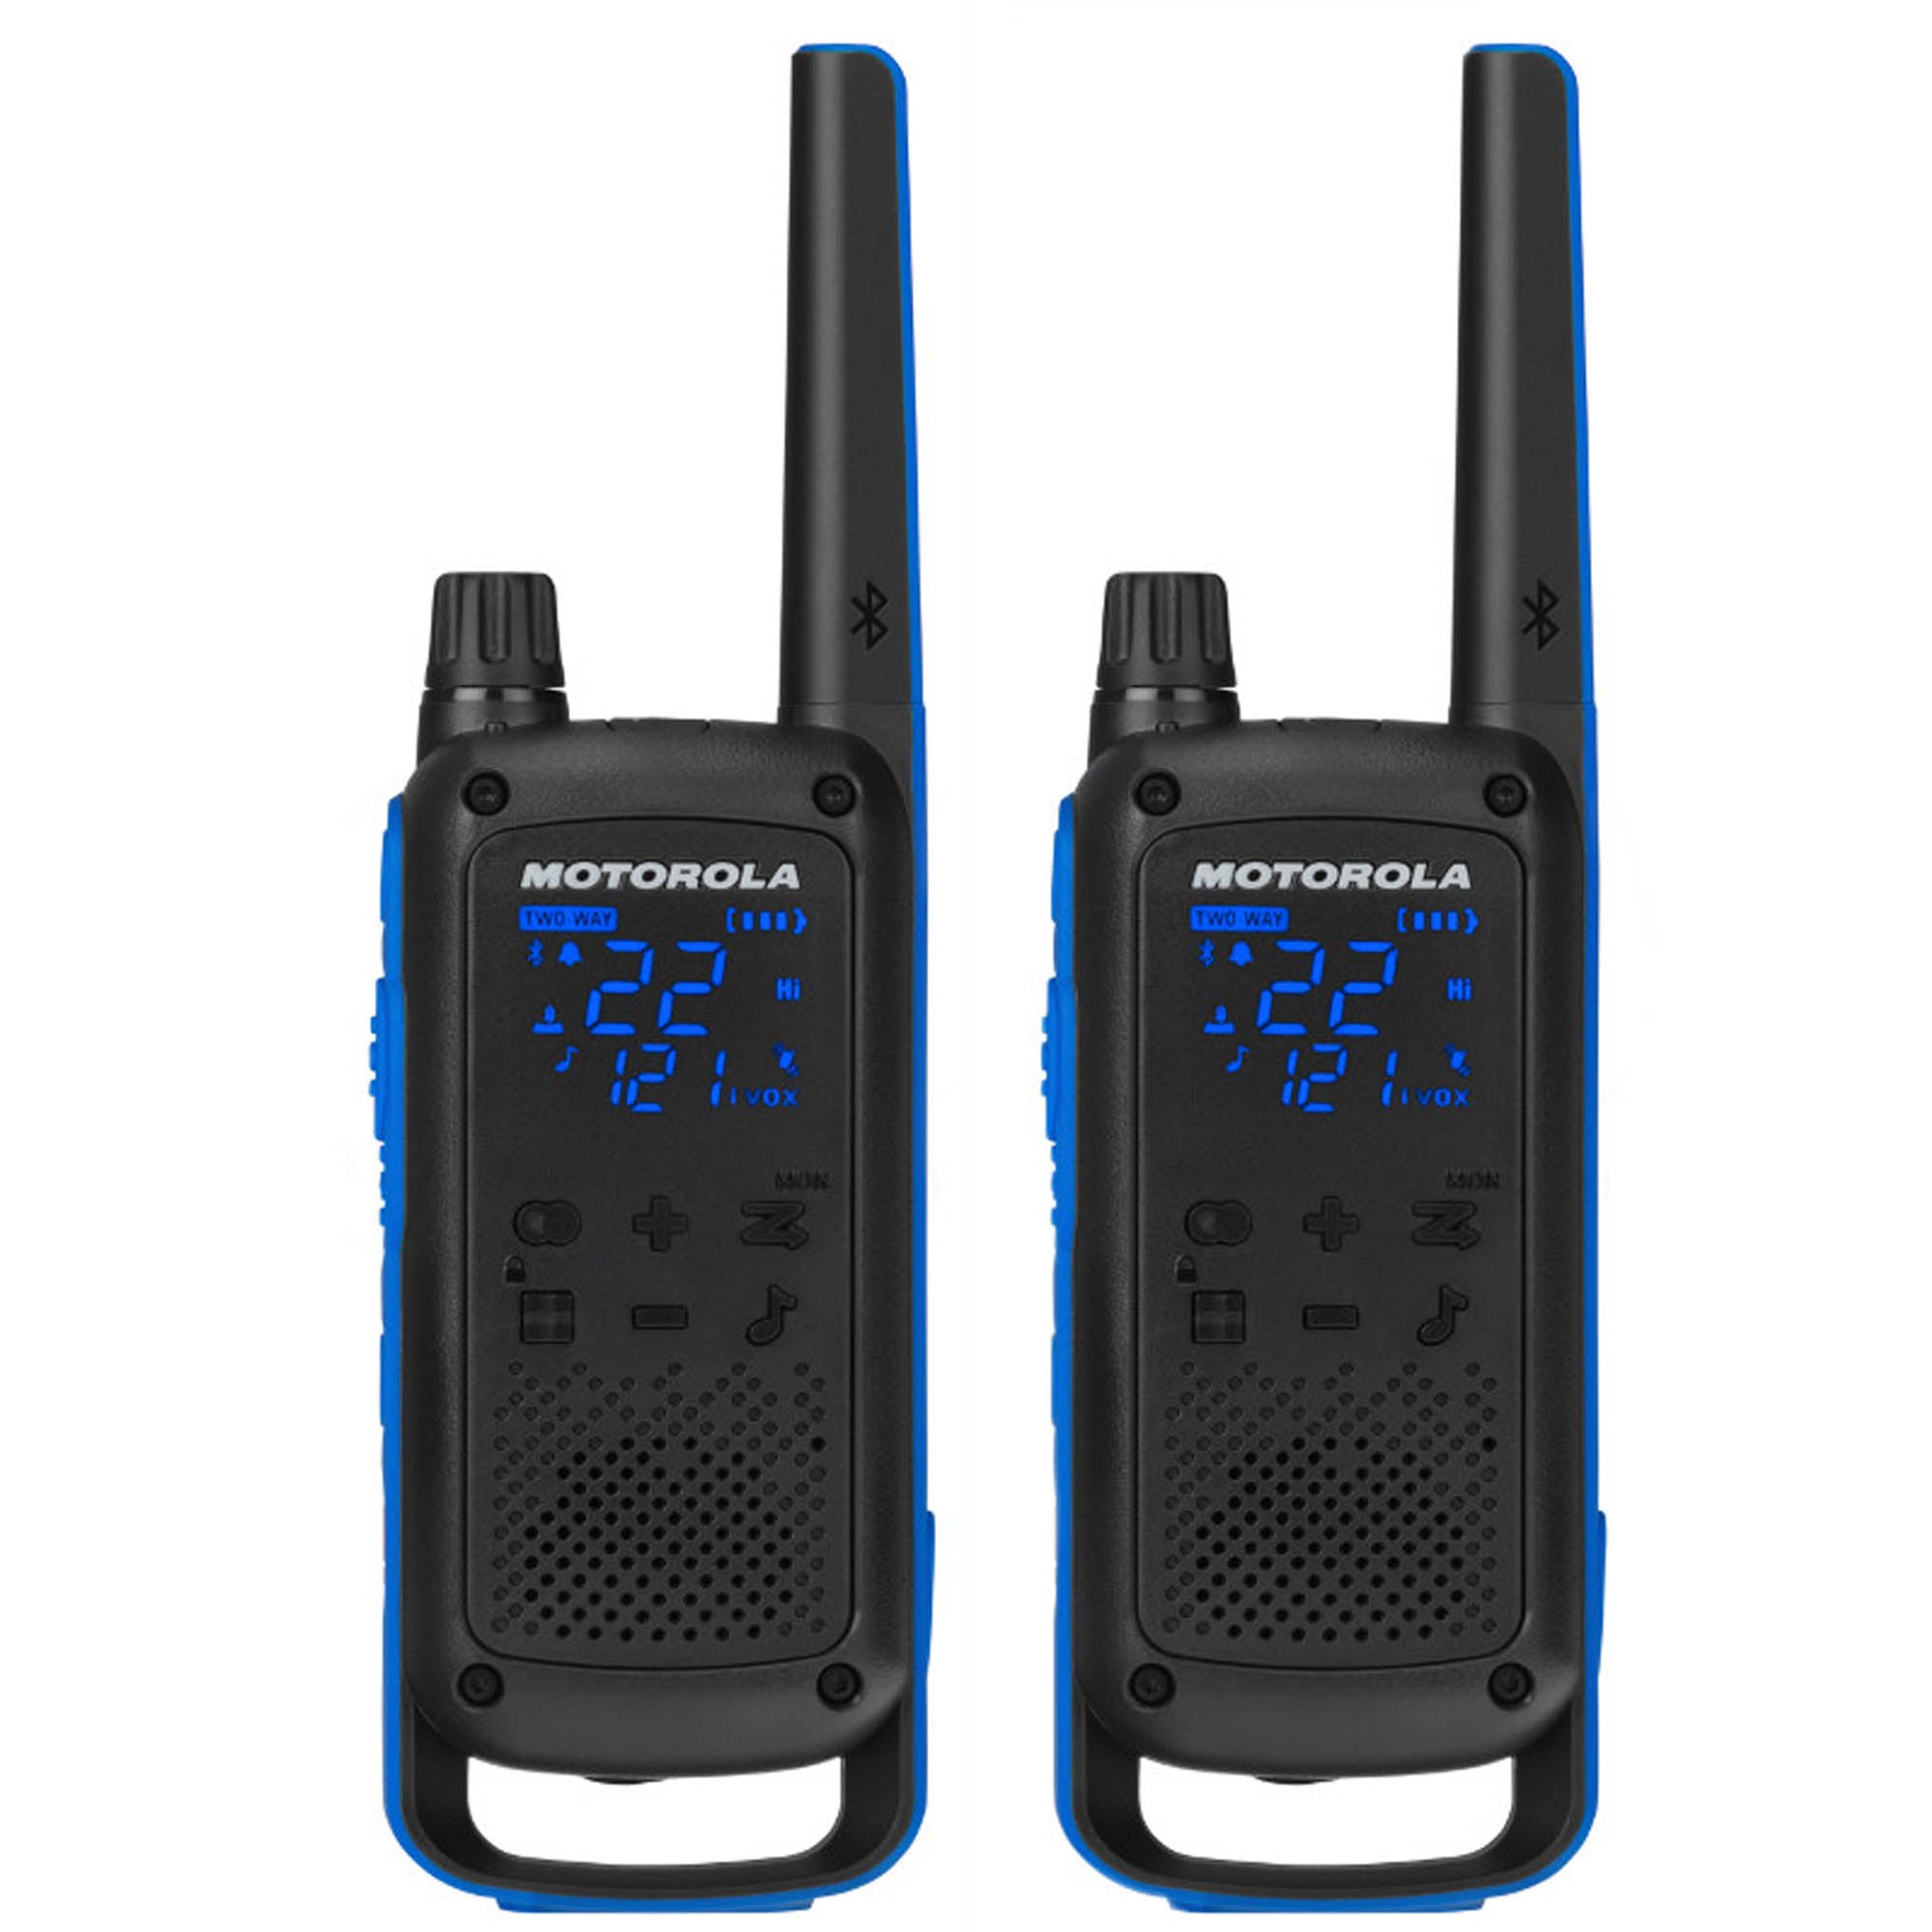 Pack of Motorola RDU4160d Two Way Radio Walkie Talkies - 3